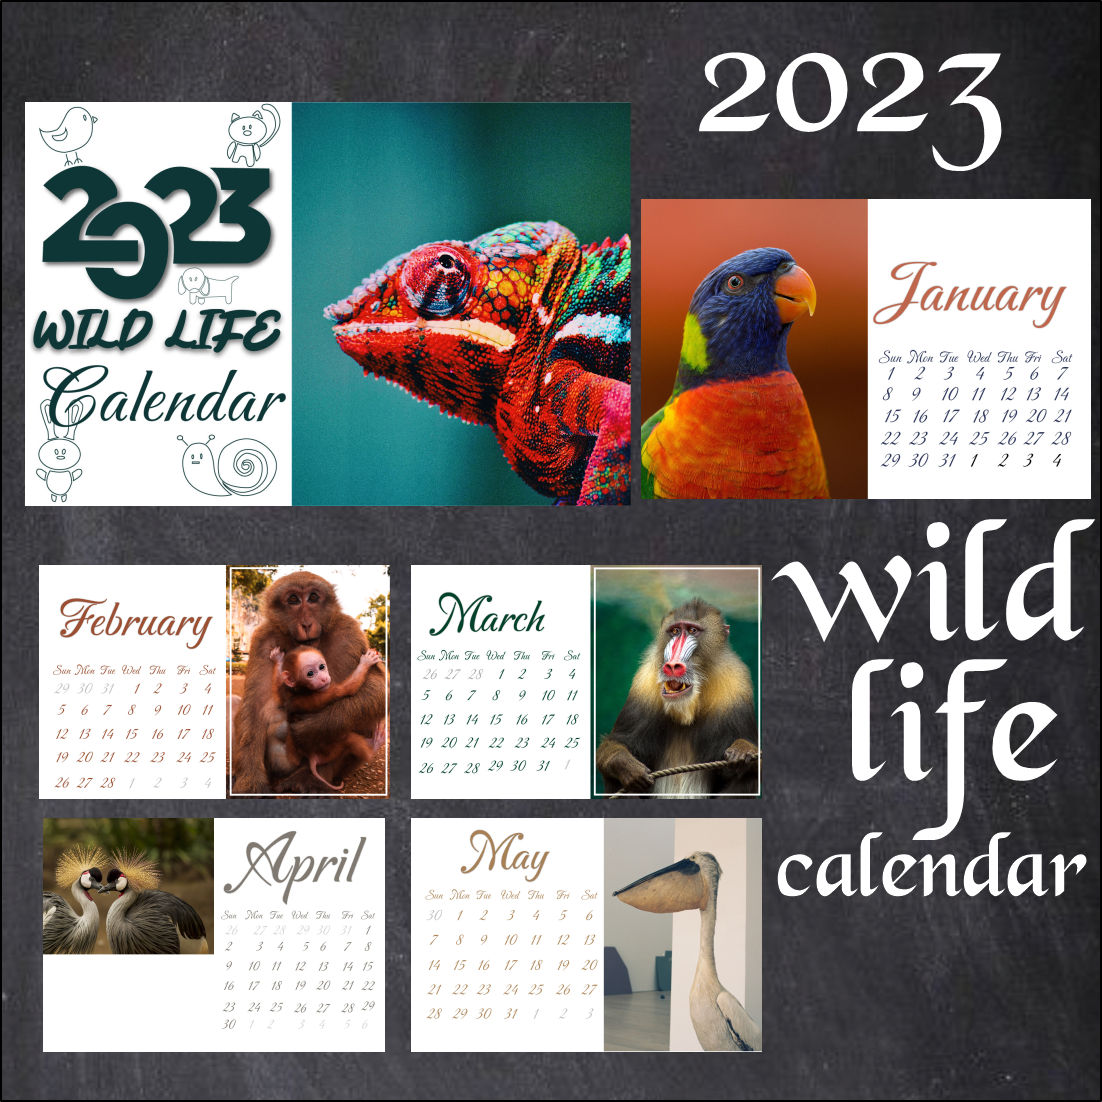 2023 Wild Life Calendar cover image.